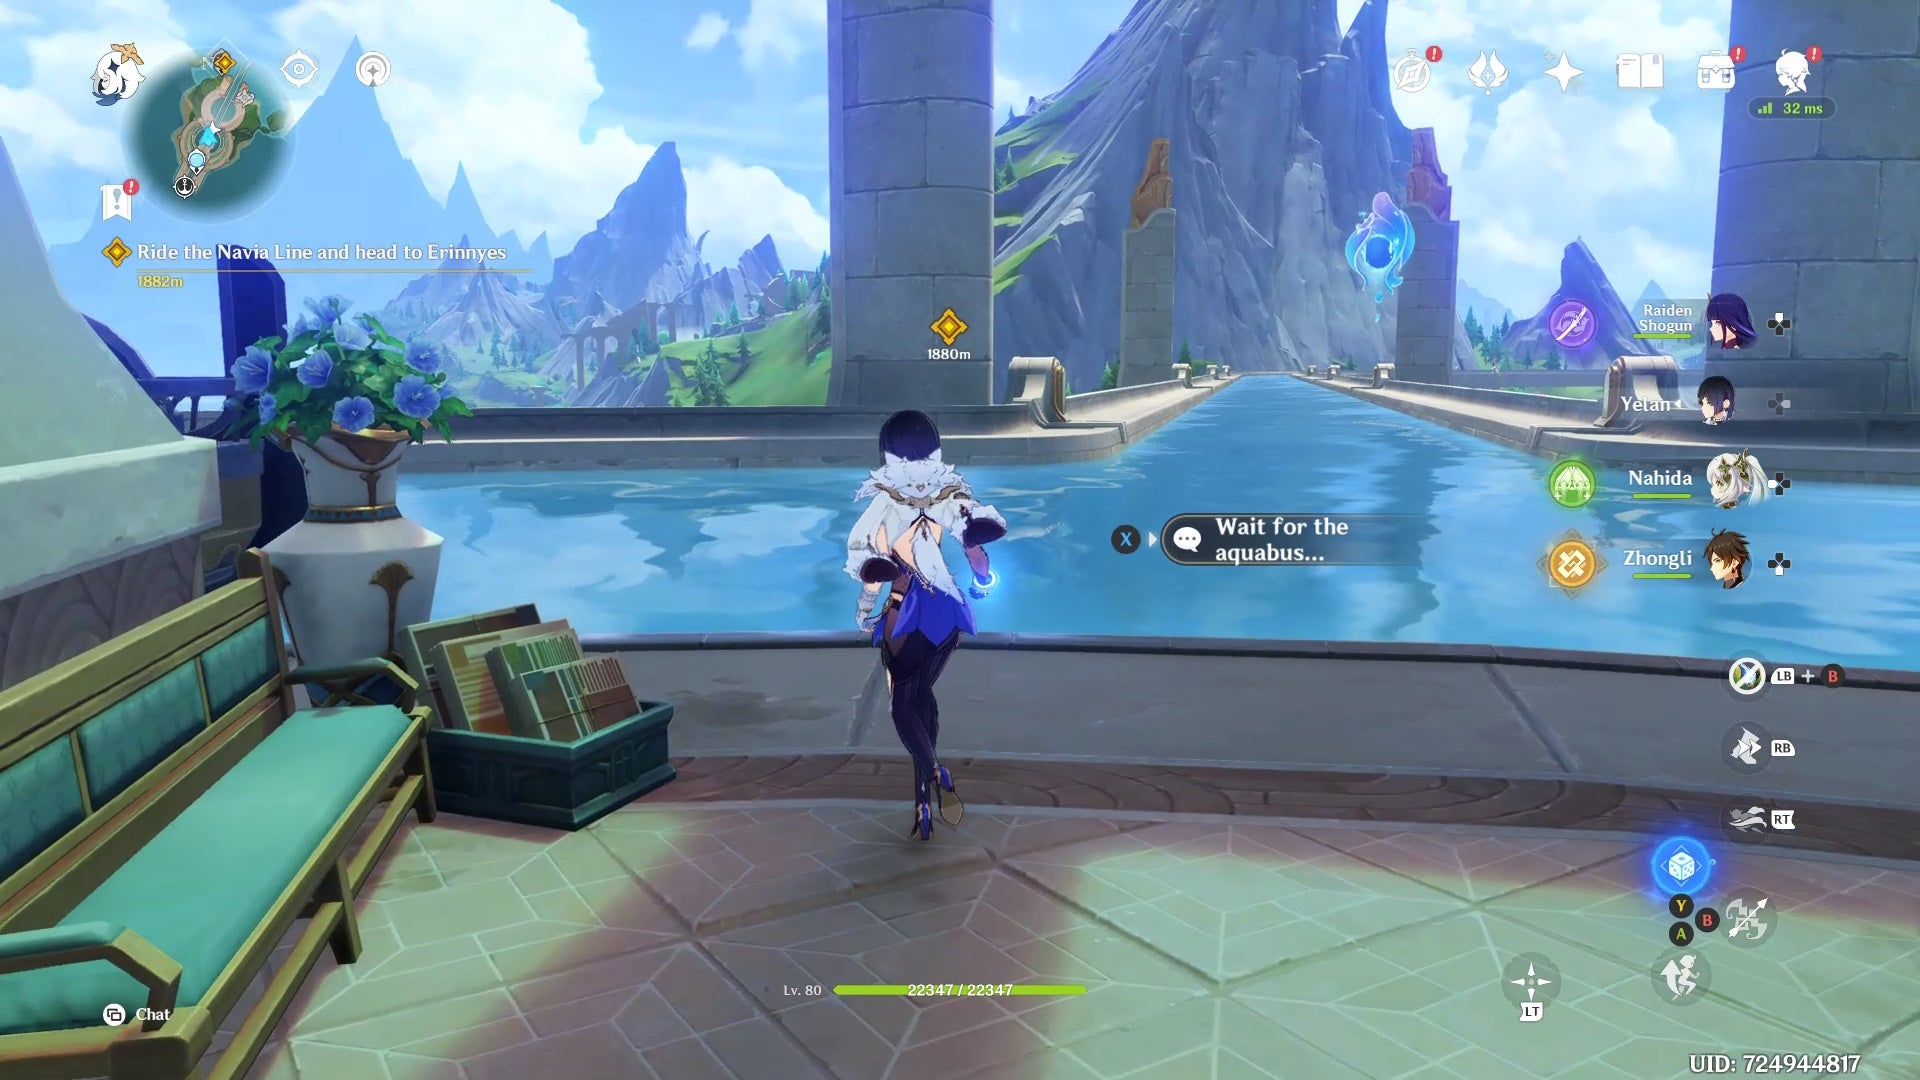 Yelan usa el mensaje para convocar un aquabus cerca de un charco de agua.